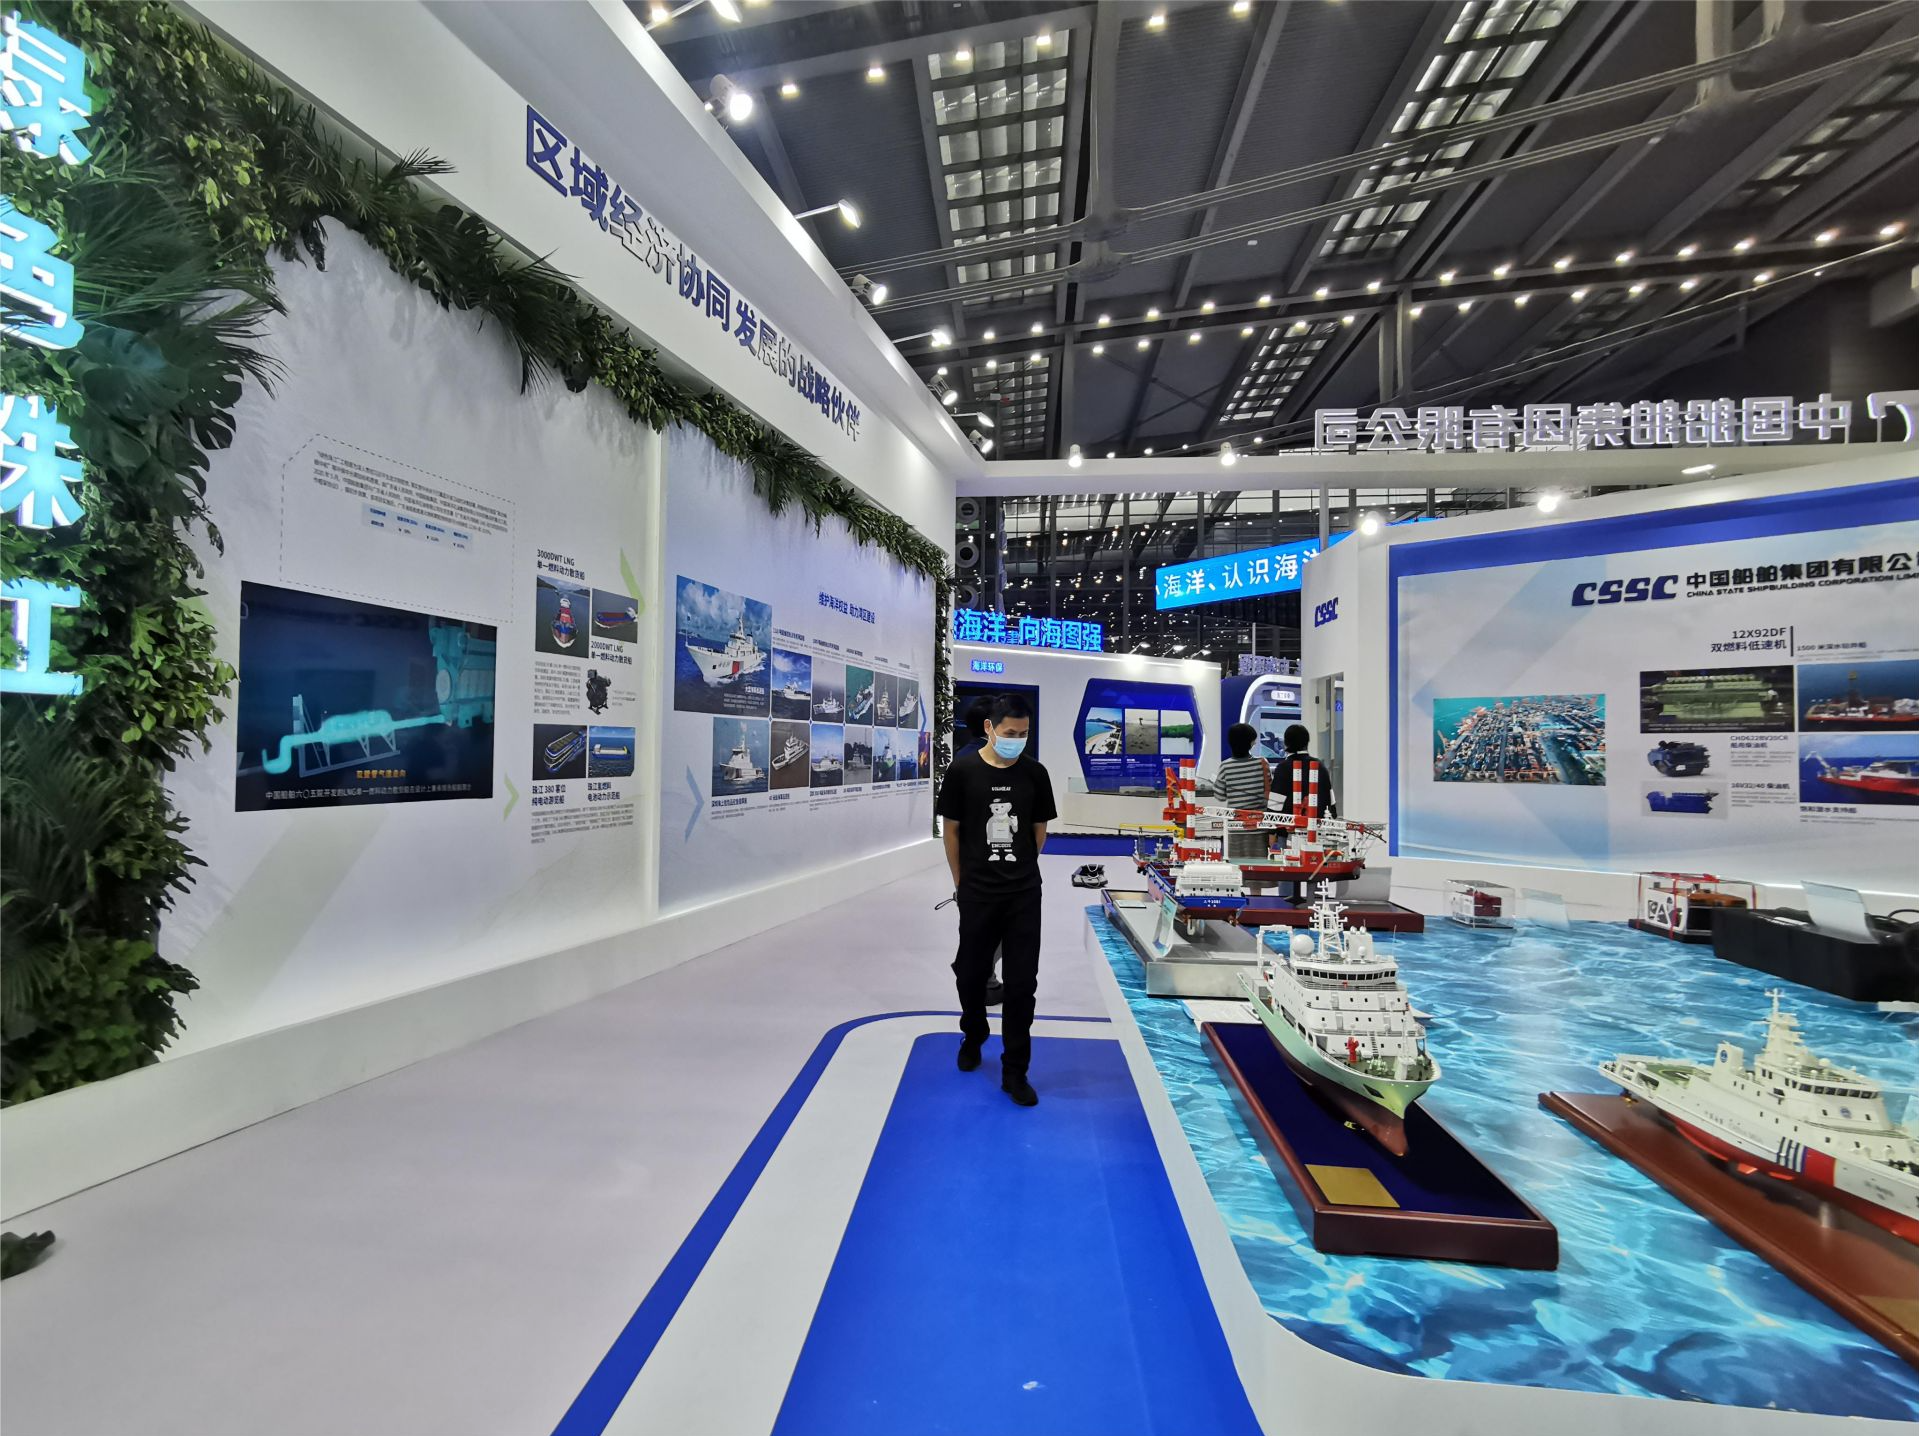 中国船舶集团携多个重磅项目亮相海博会